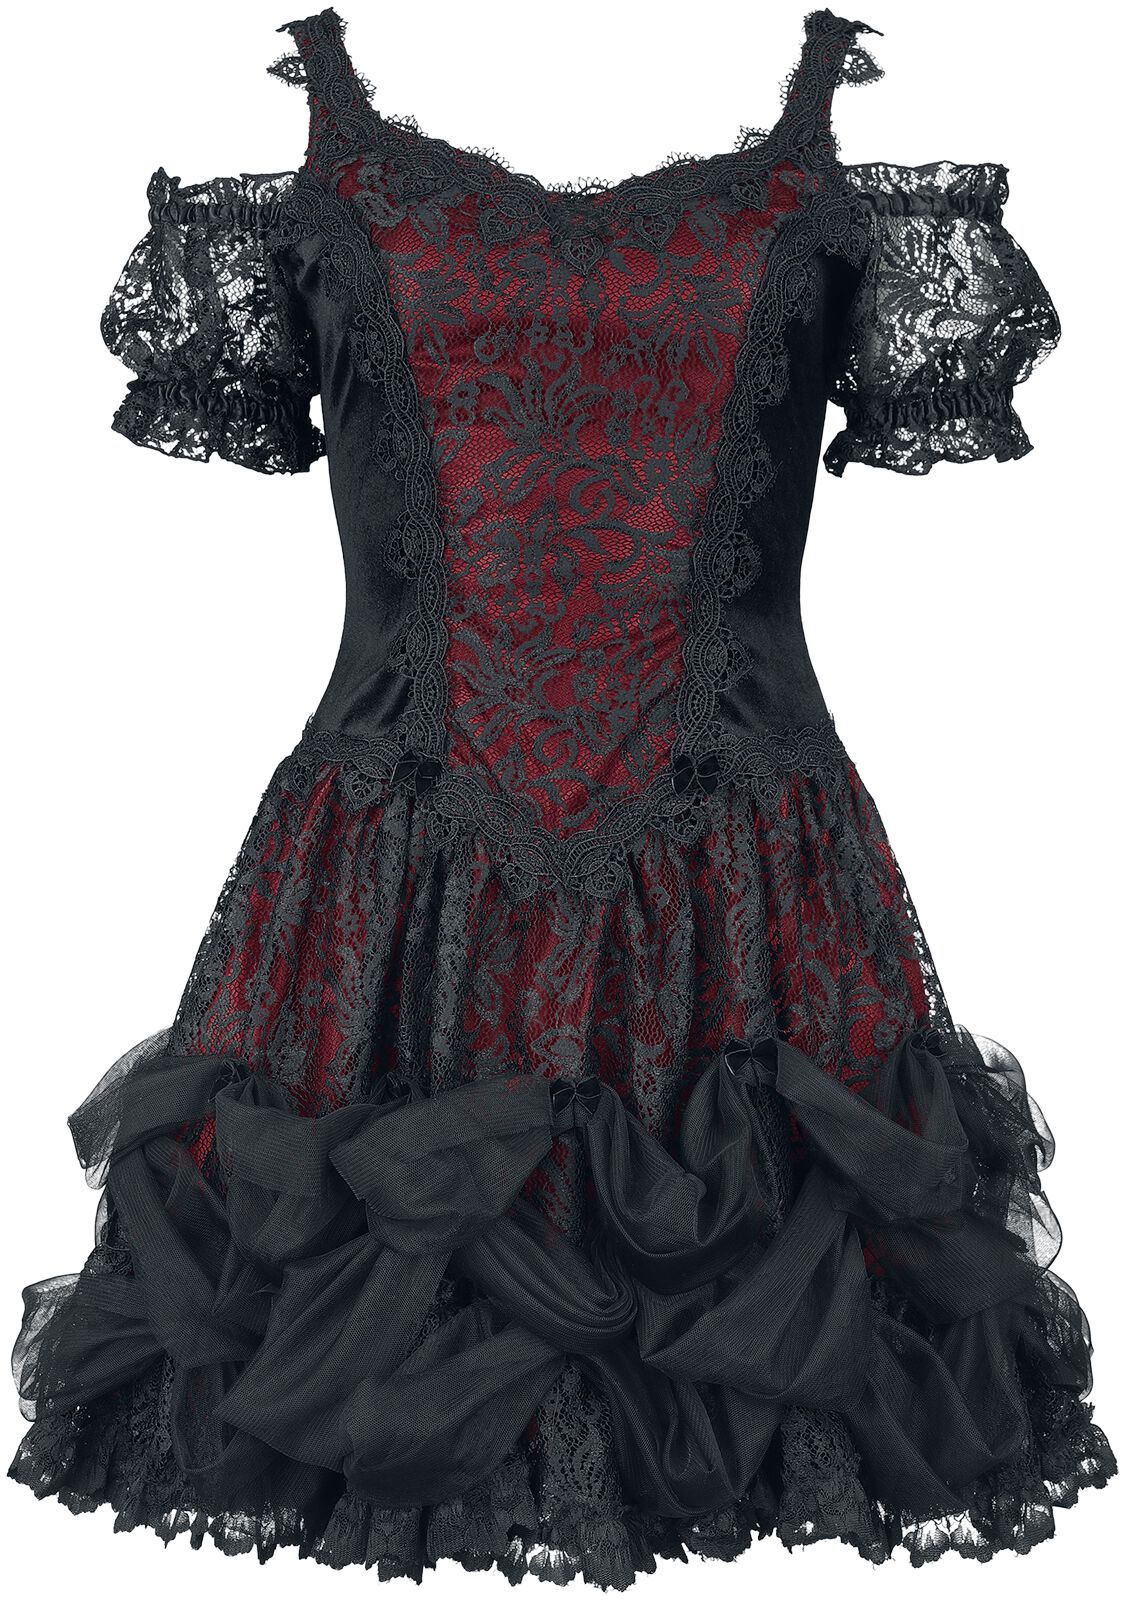 Sinister Gothic Gothic Dress Kurzes Kleid schwarz rot in S